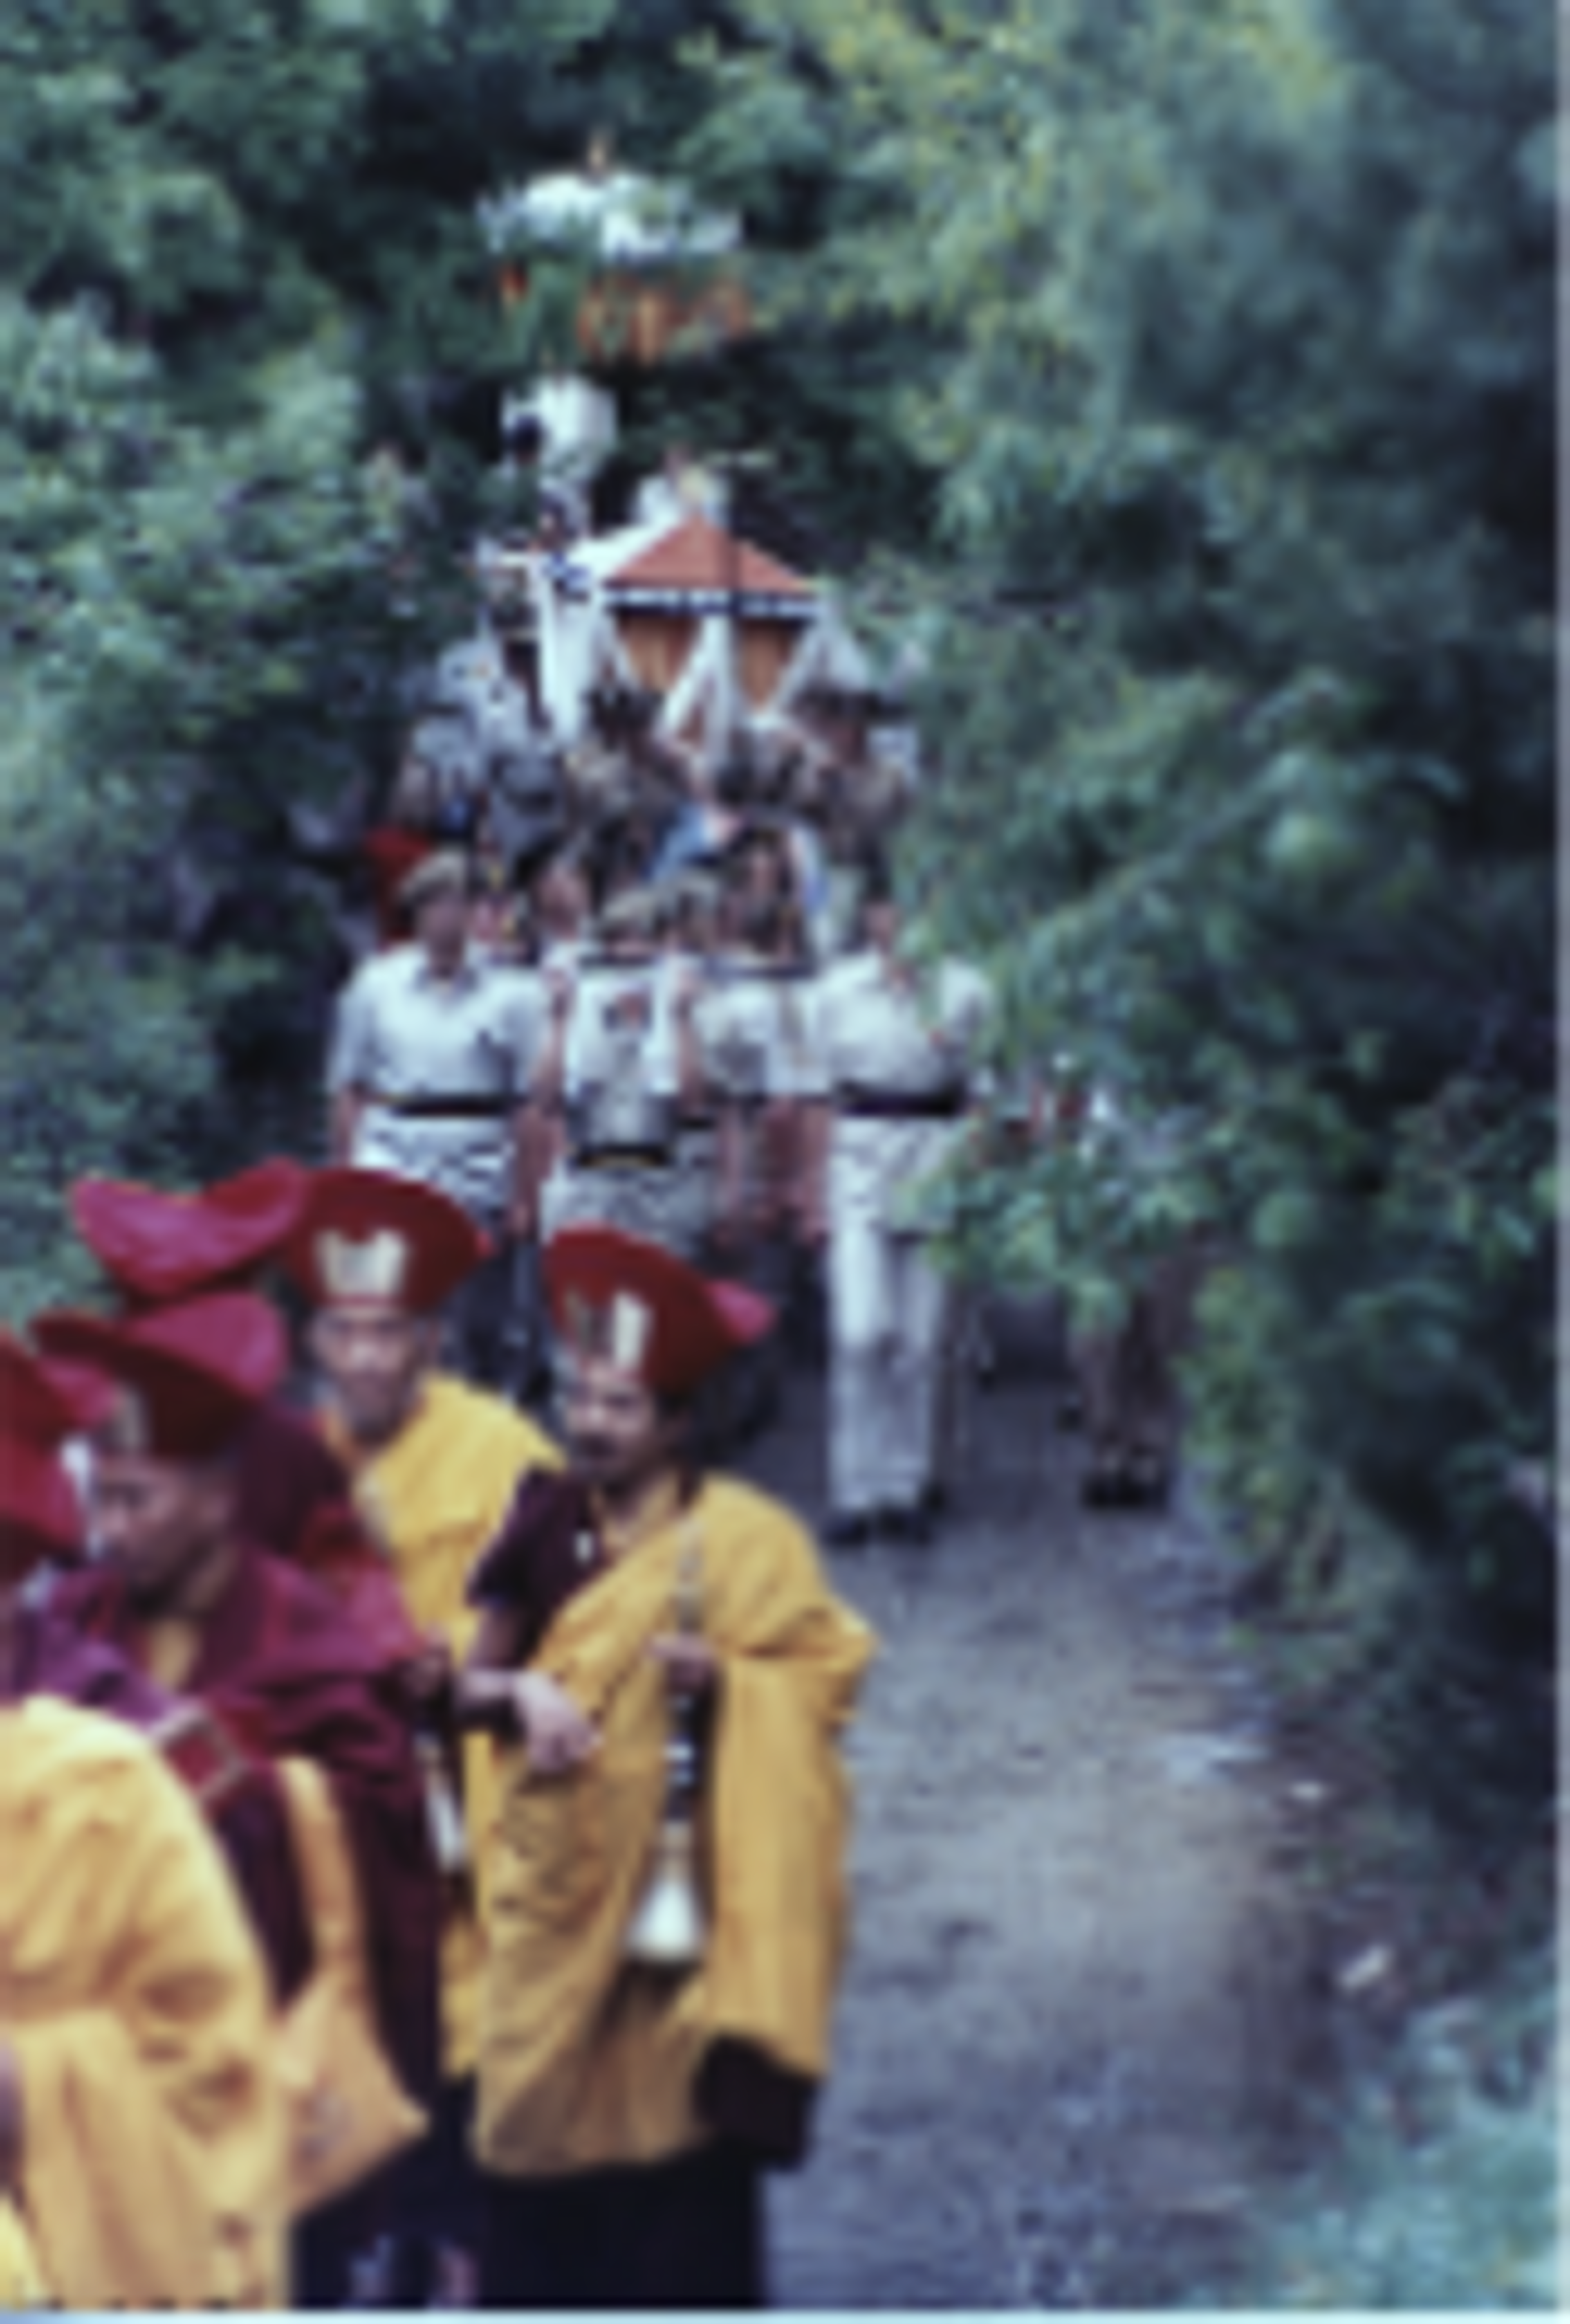 Trungpa Rinpoche cremation